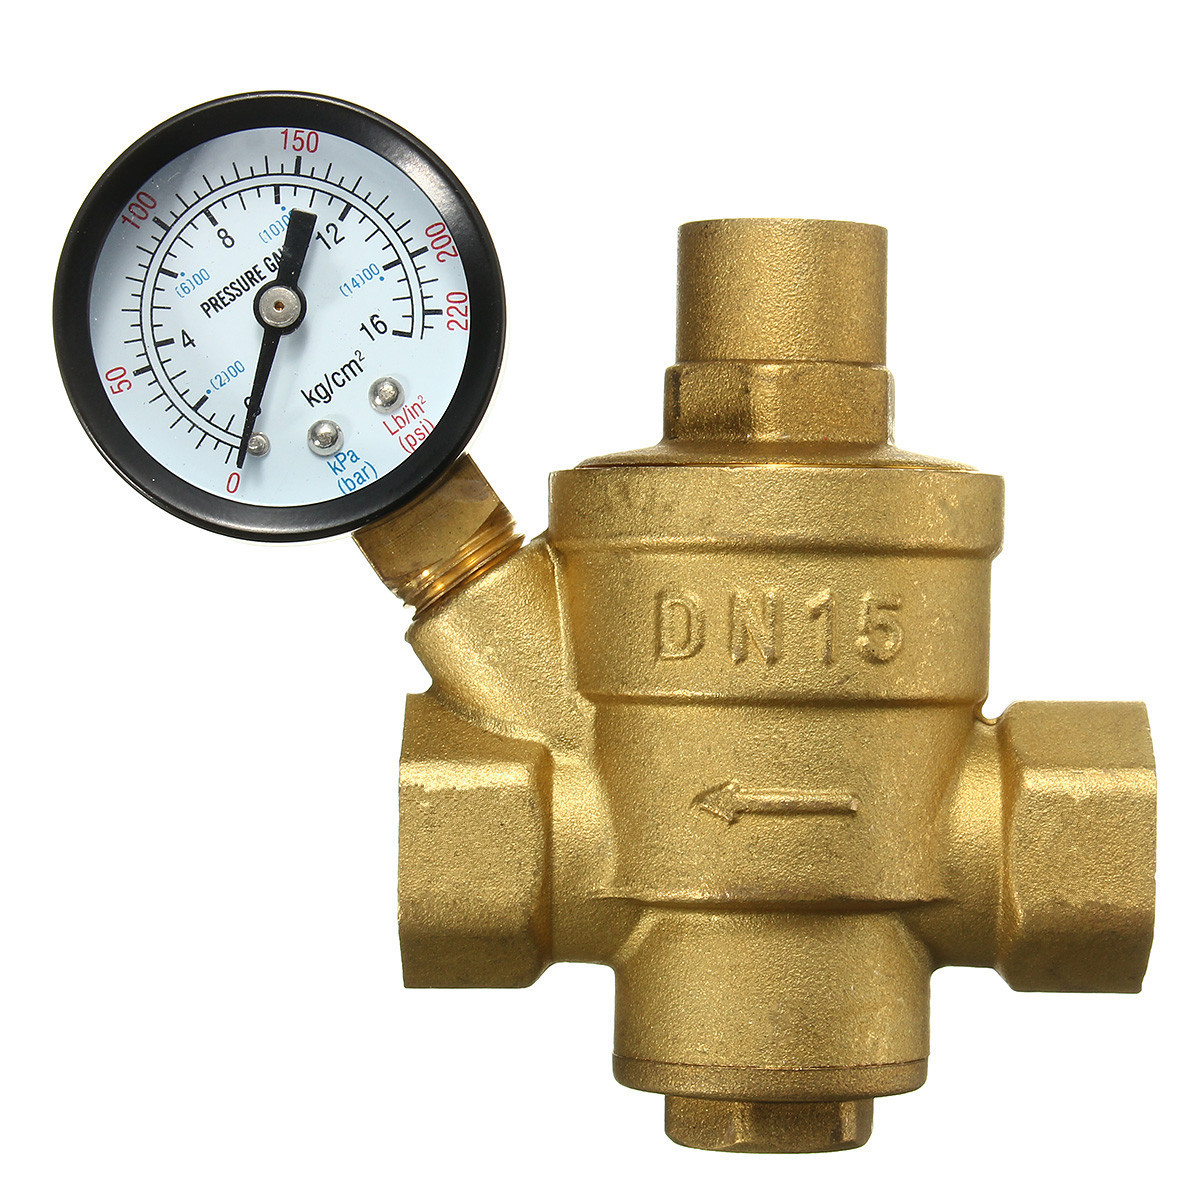 Adjustable-DN15-Bspp-Brass-Water-Pressure-Reducing-Valve-with-Gauge-Flow-1104771-3